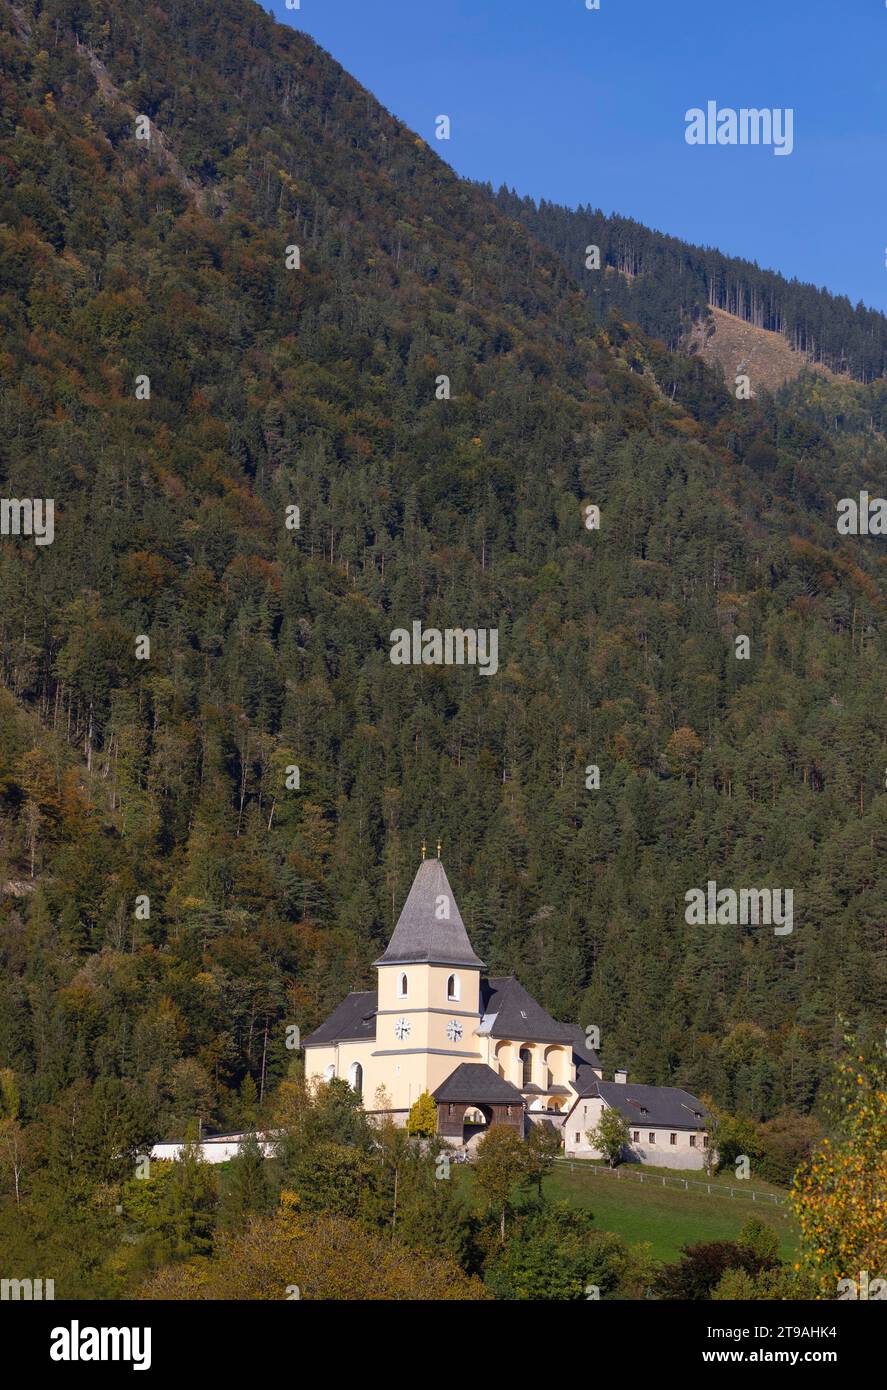 Drone image, view of Hollenstein an der Ybbs, parish church, Ybbstal, Mostviertel, Lower Austria, Austria Stock Photo